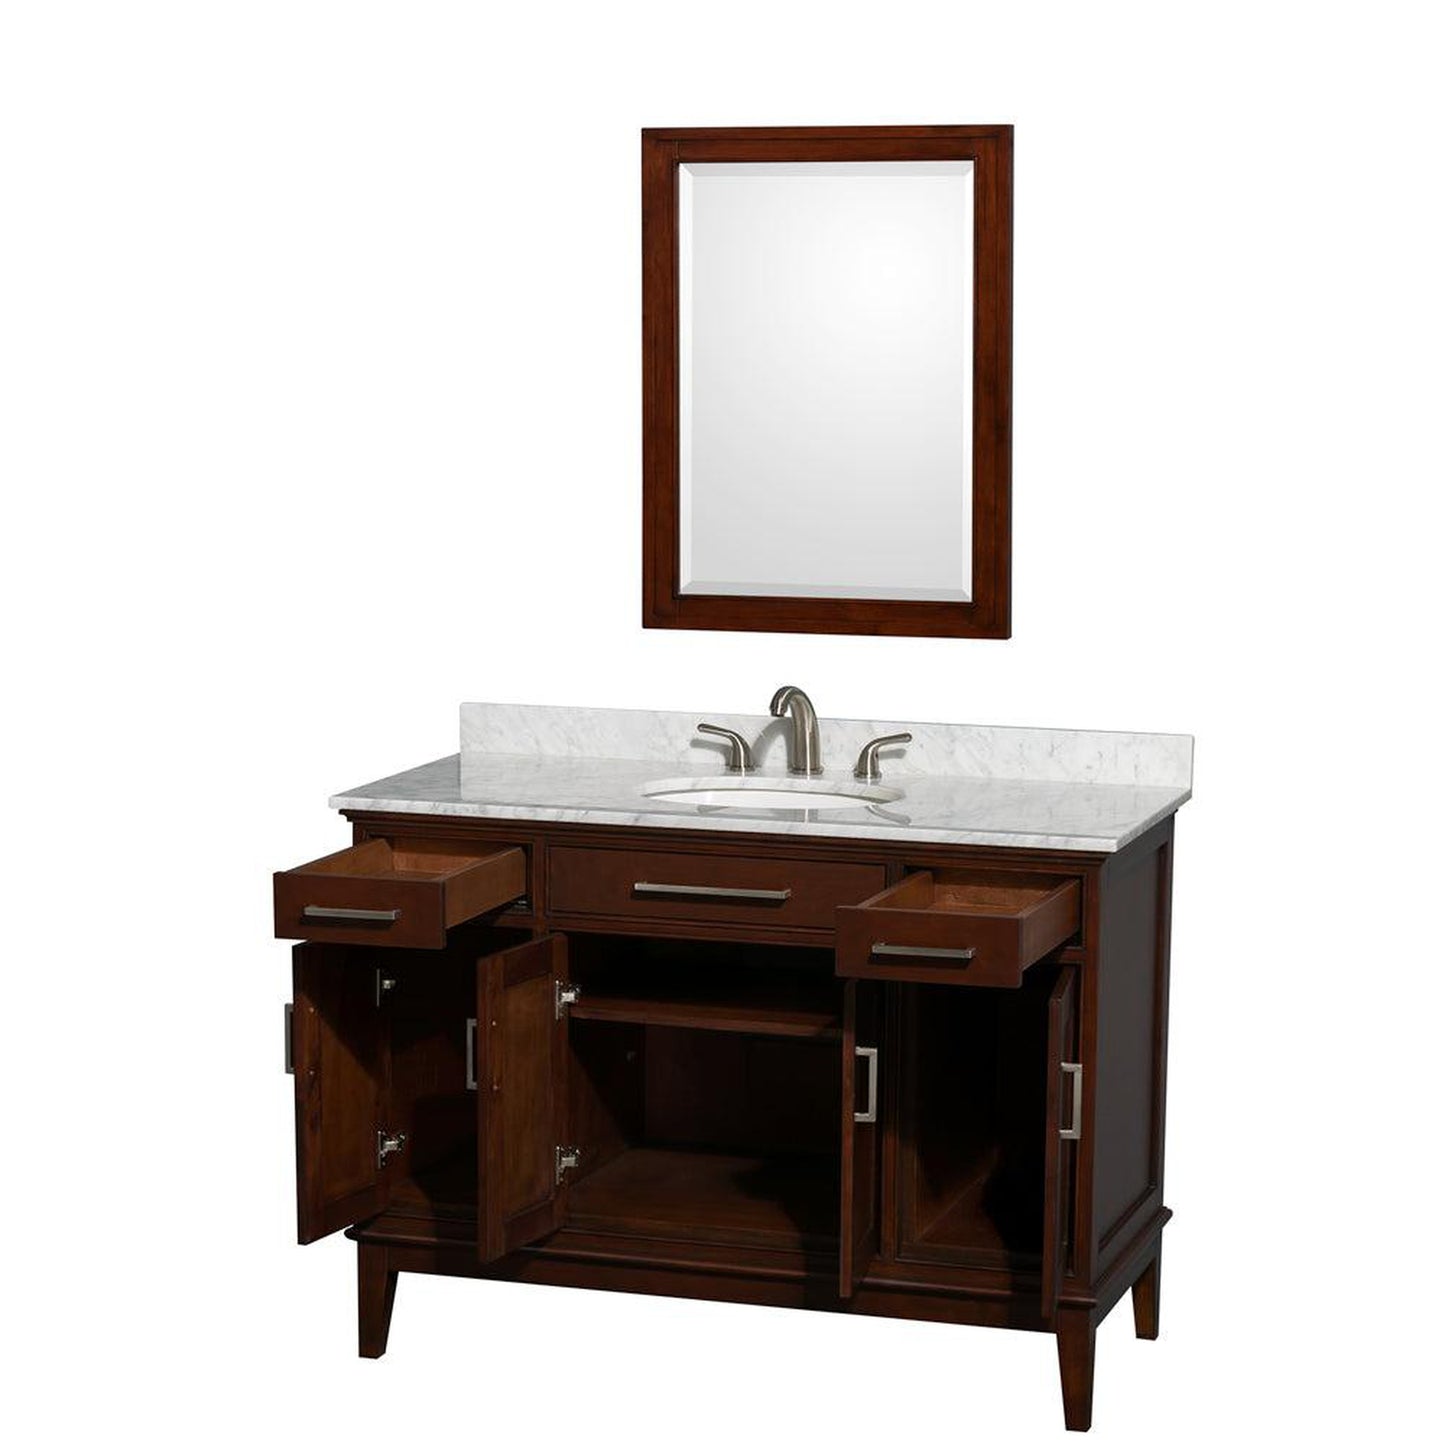 Wyndham Collection Hatton 48" Single Bathroom Vanity in Dark Chestnut, White Carrara Marble Countertop, Undermount Oval Sink, and 24" Mirror